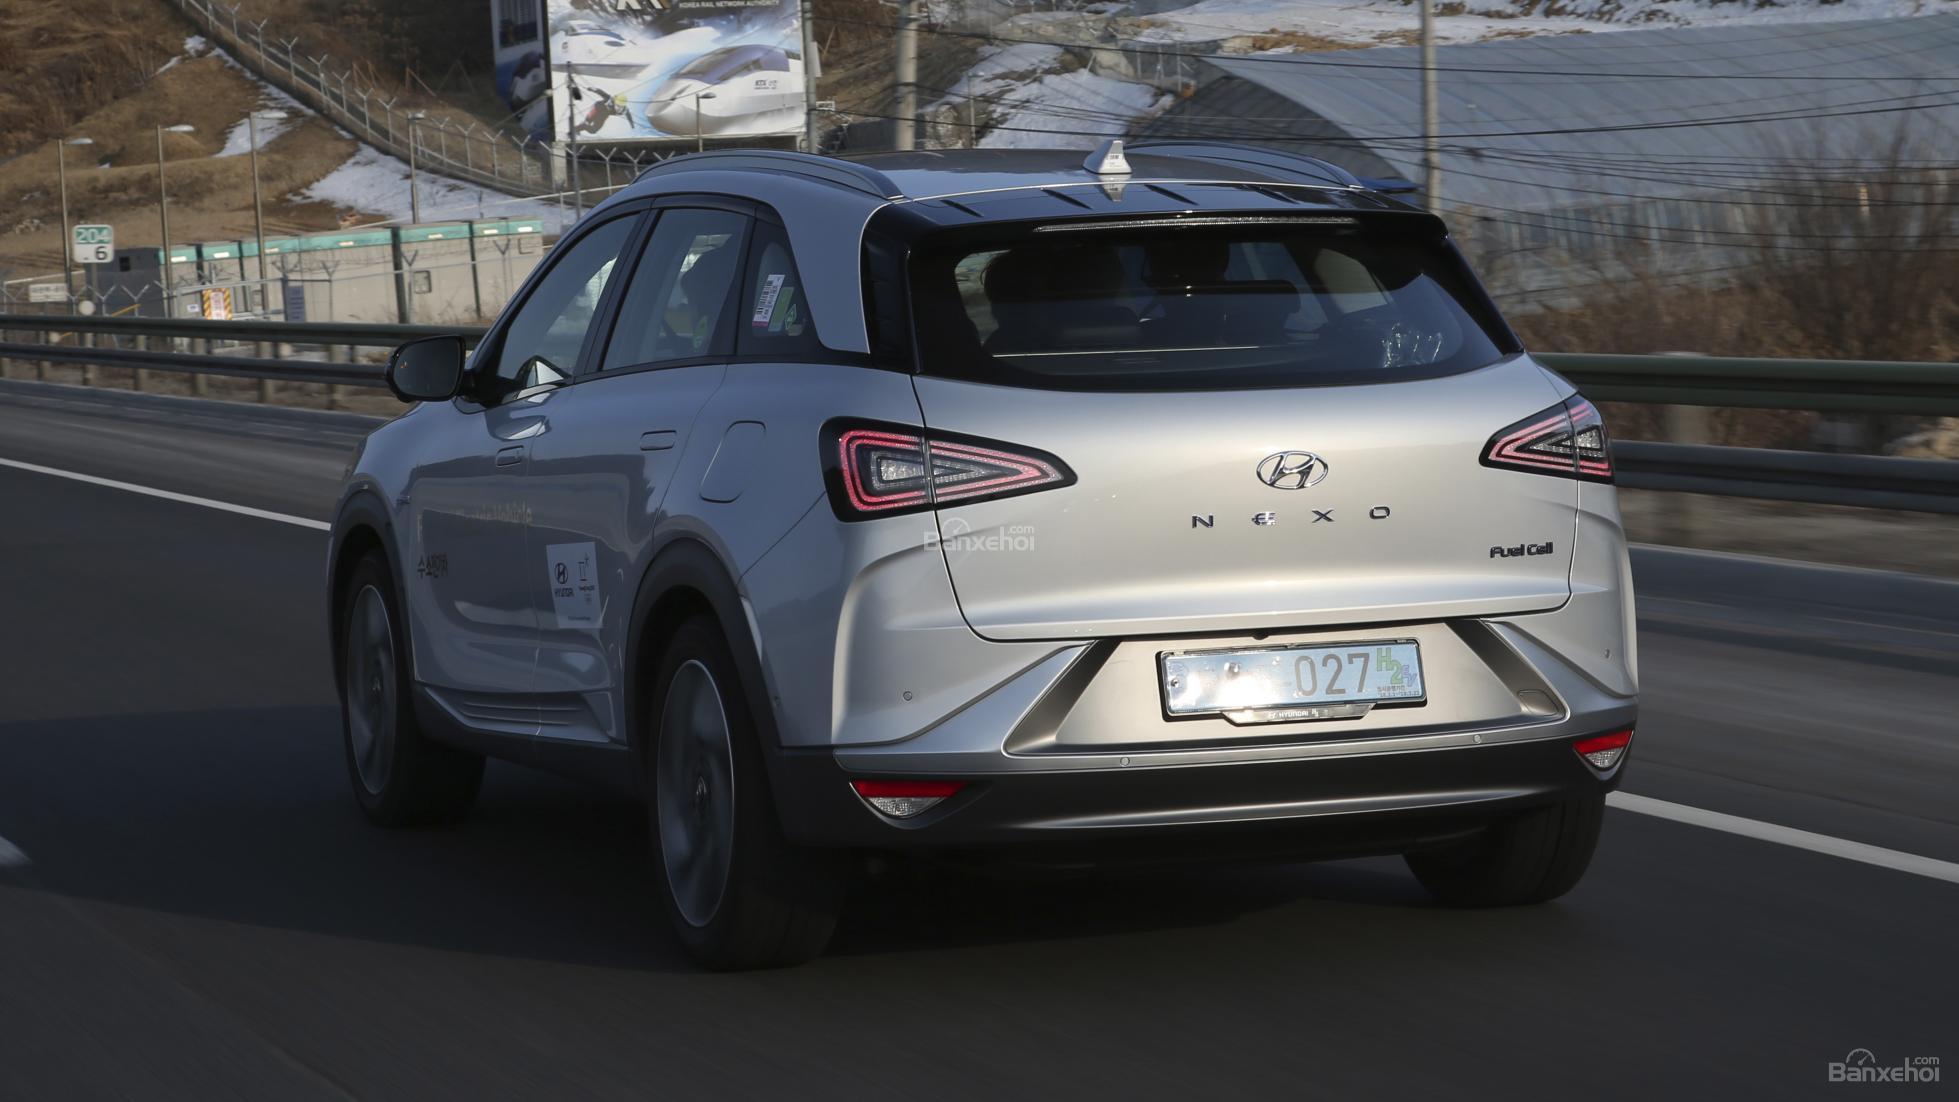 Đánh giá xe Hyundai Nexo 2019: Cửa sổ sau cung cấp tầm quan sát tốt z